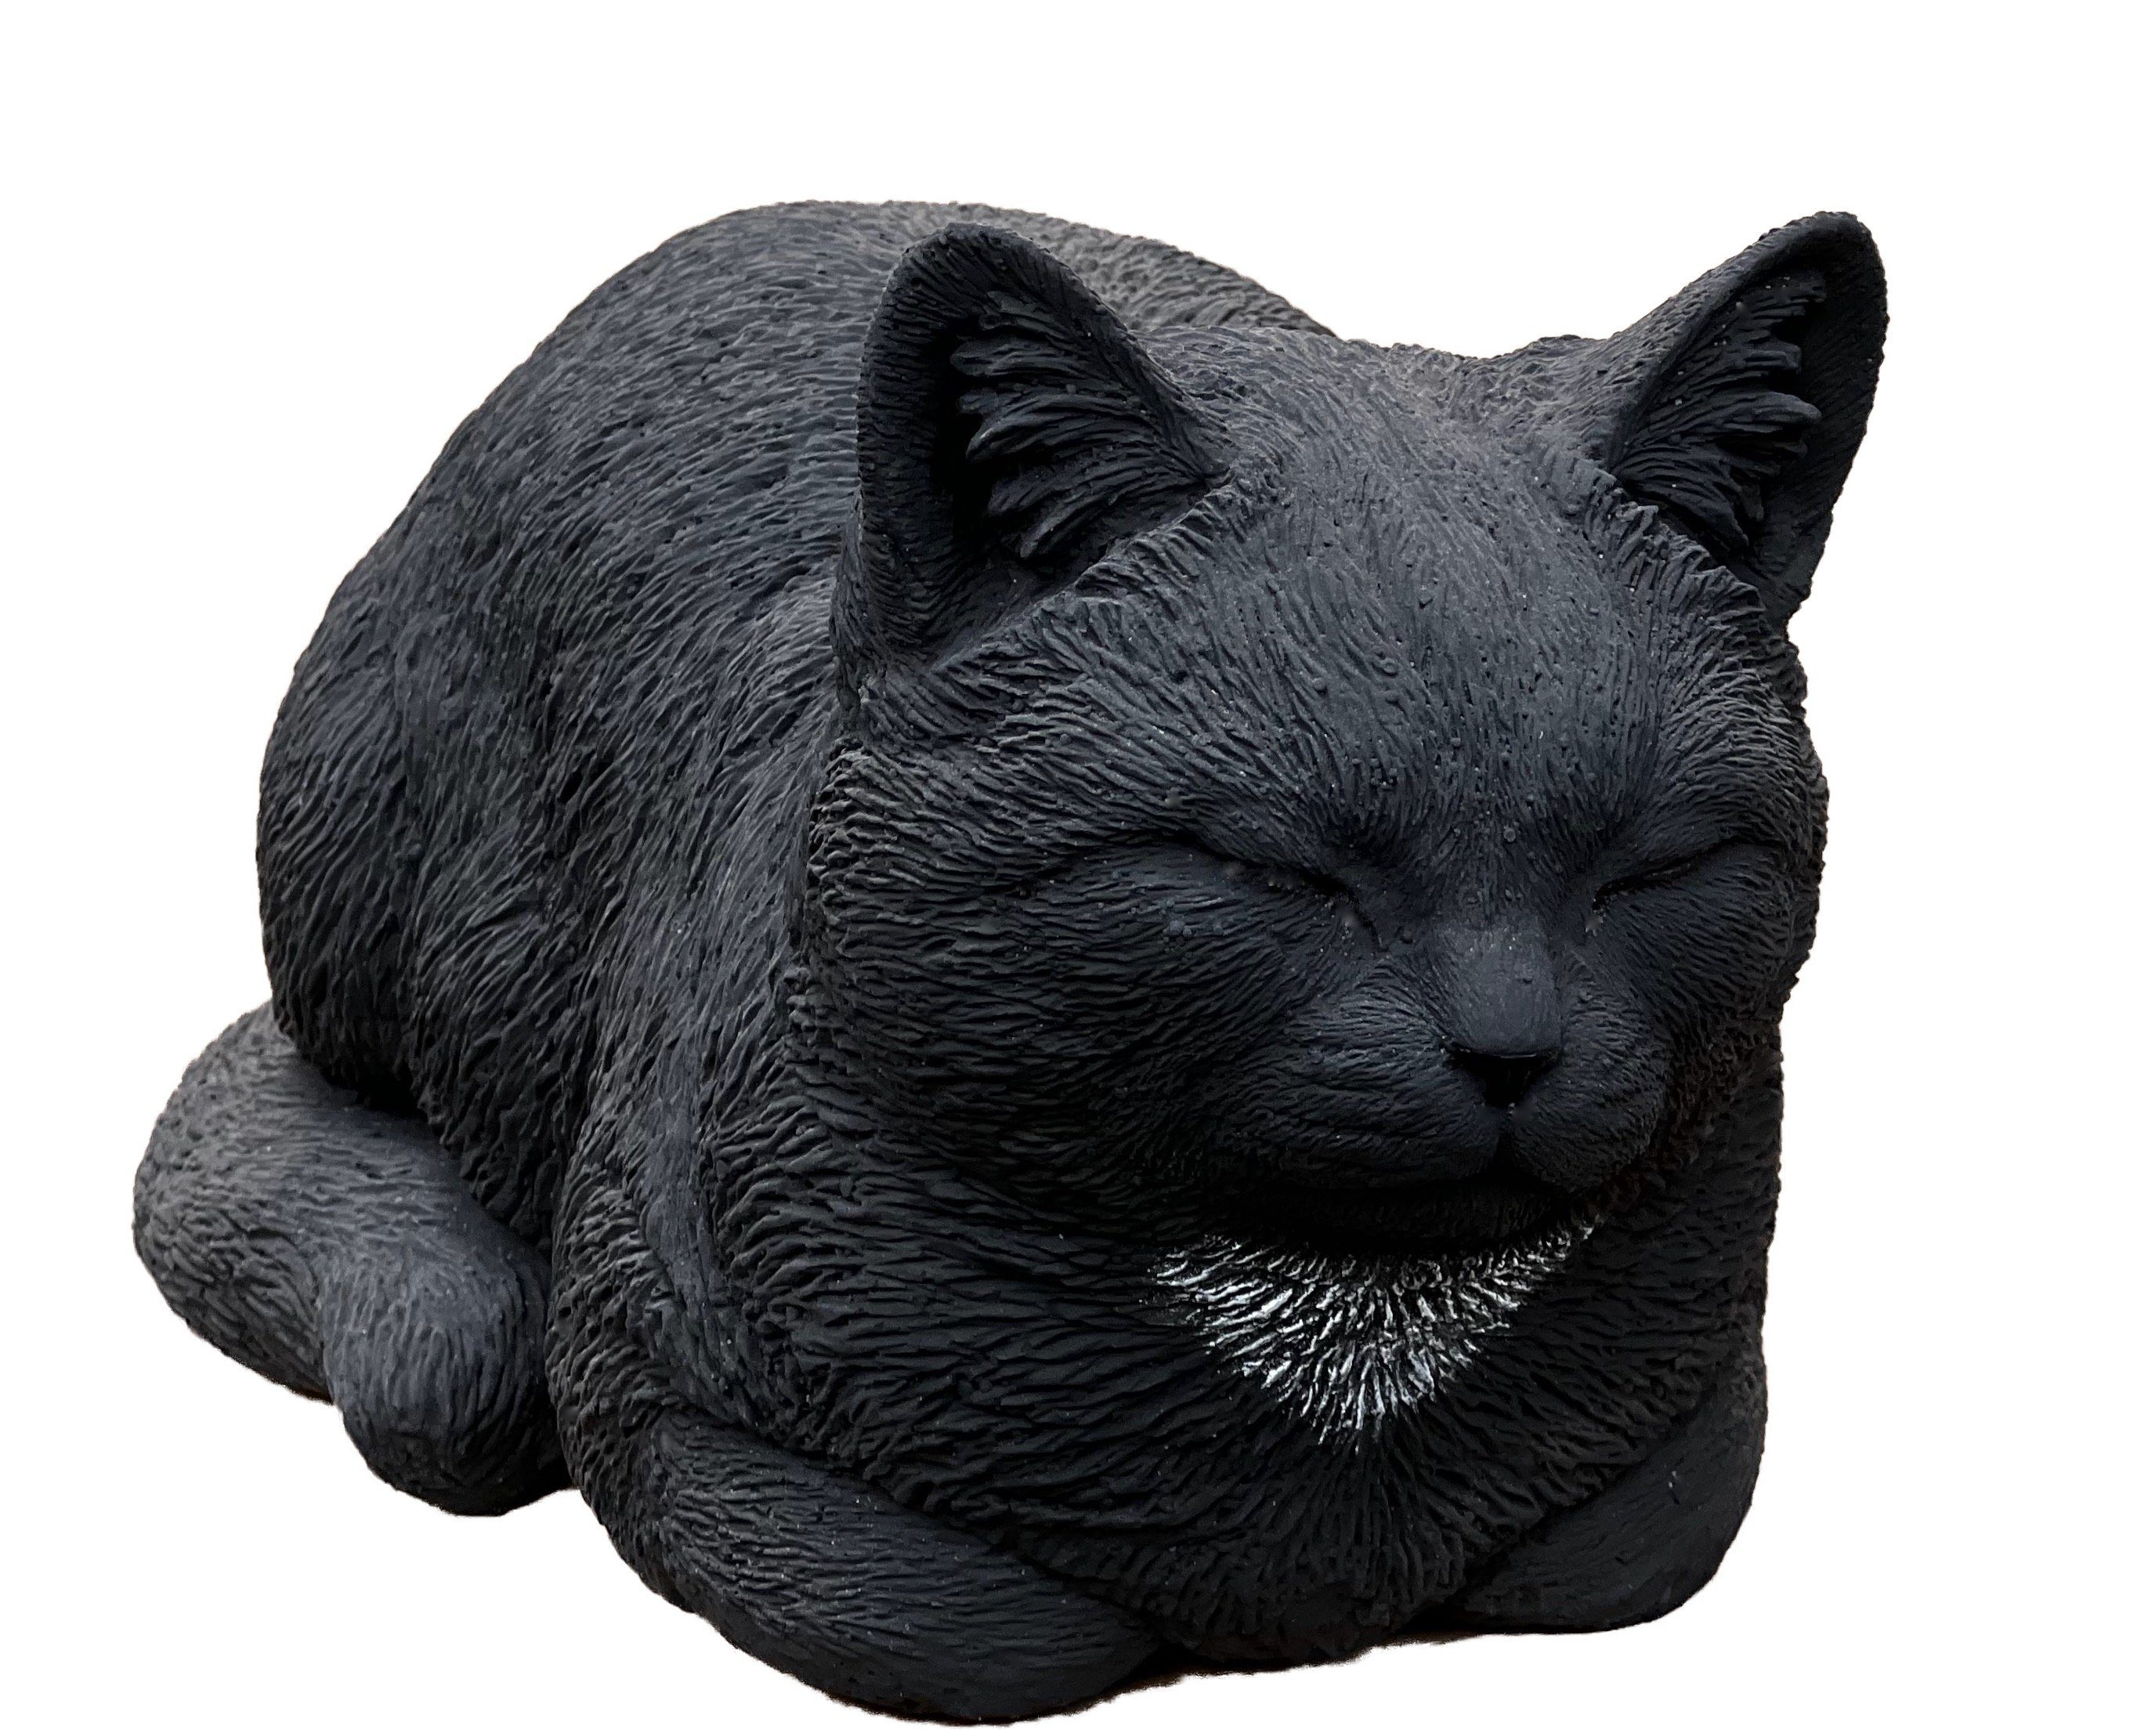 Stone and Style Gartenfigur Steinfigur große schwarze Katze Träumerle frostfest ca. 36 cm Länge